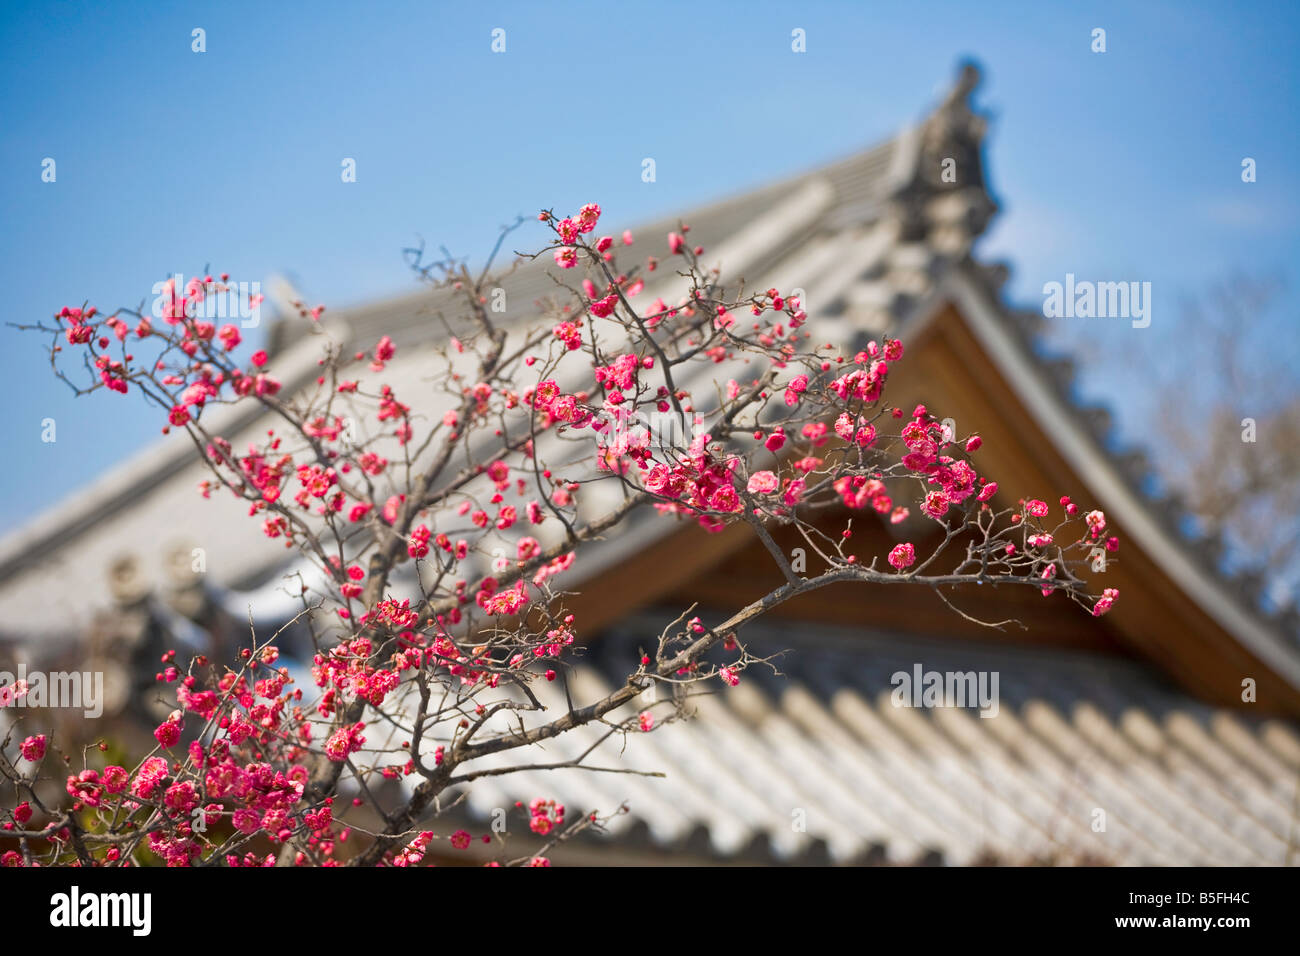 La città di Kyoto Arashiyama District Giappone Chishaku nel tempio buddista di linea del tetto con la fioritura pollm blossoms Foto Stock